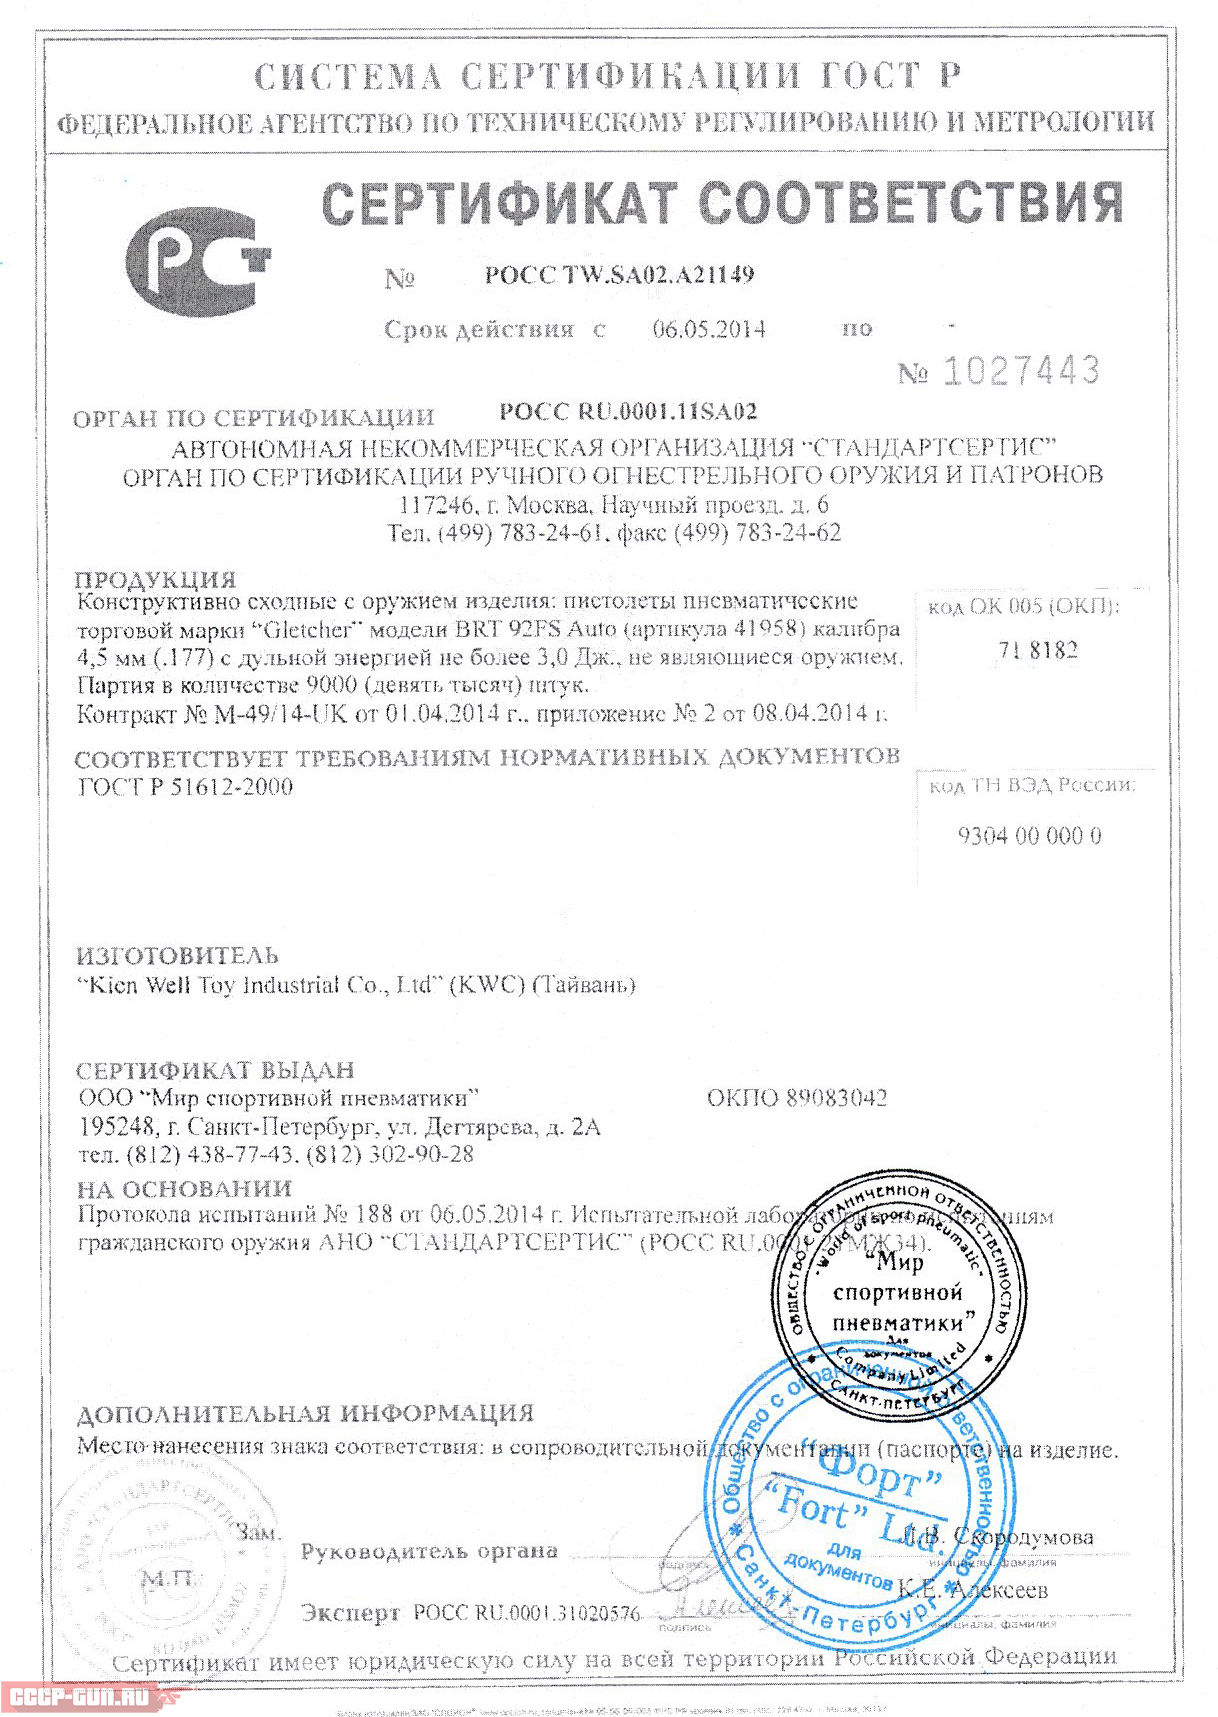 Сертификат на пневматический пистолет Gletcher BRT 92FS Auto скачать